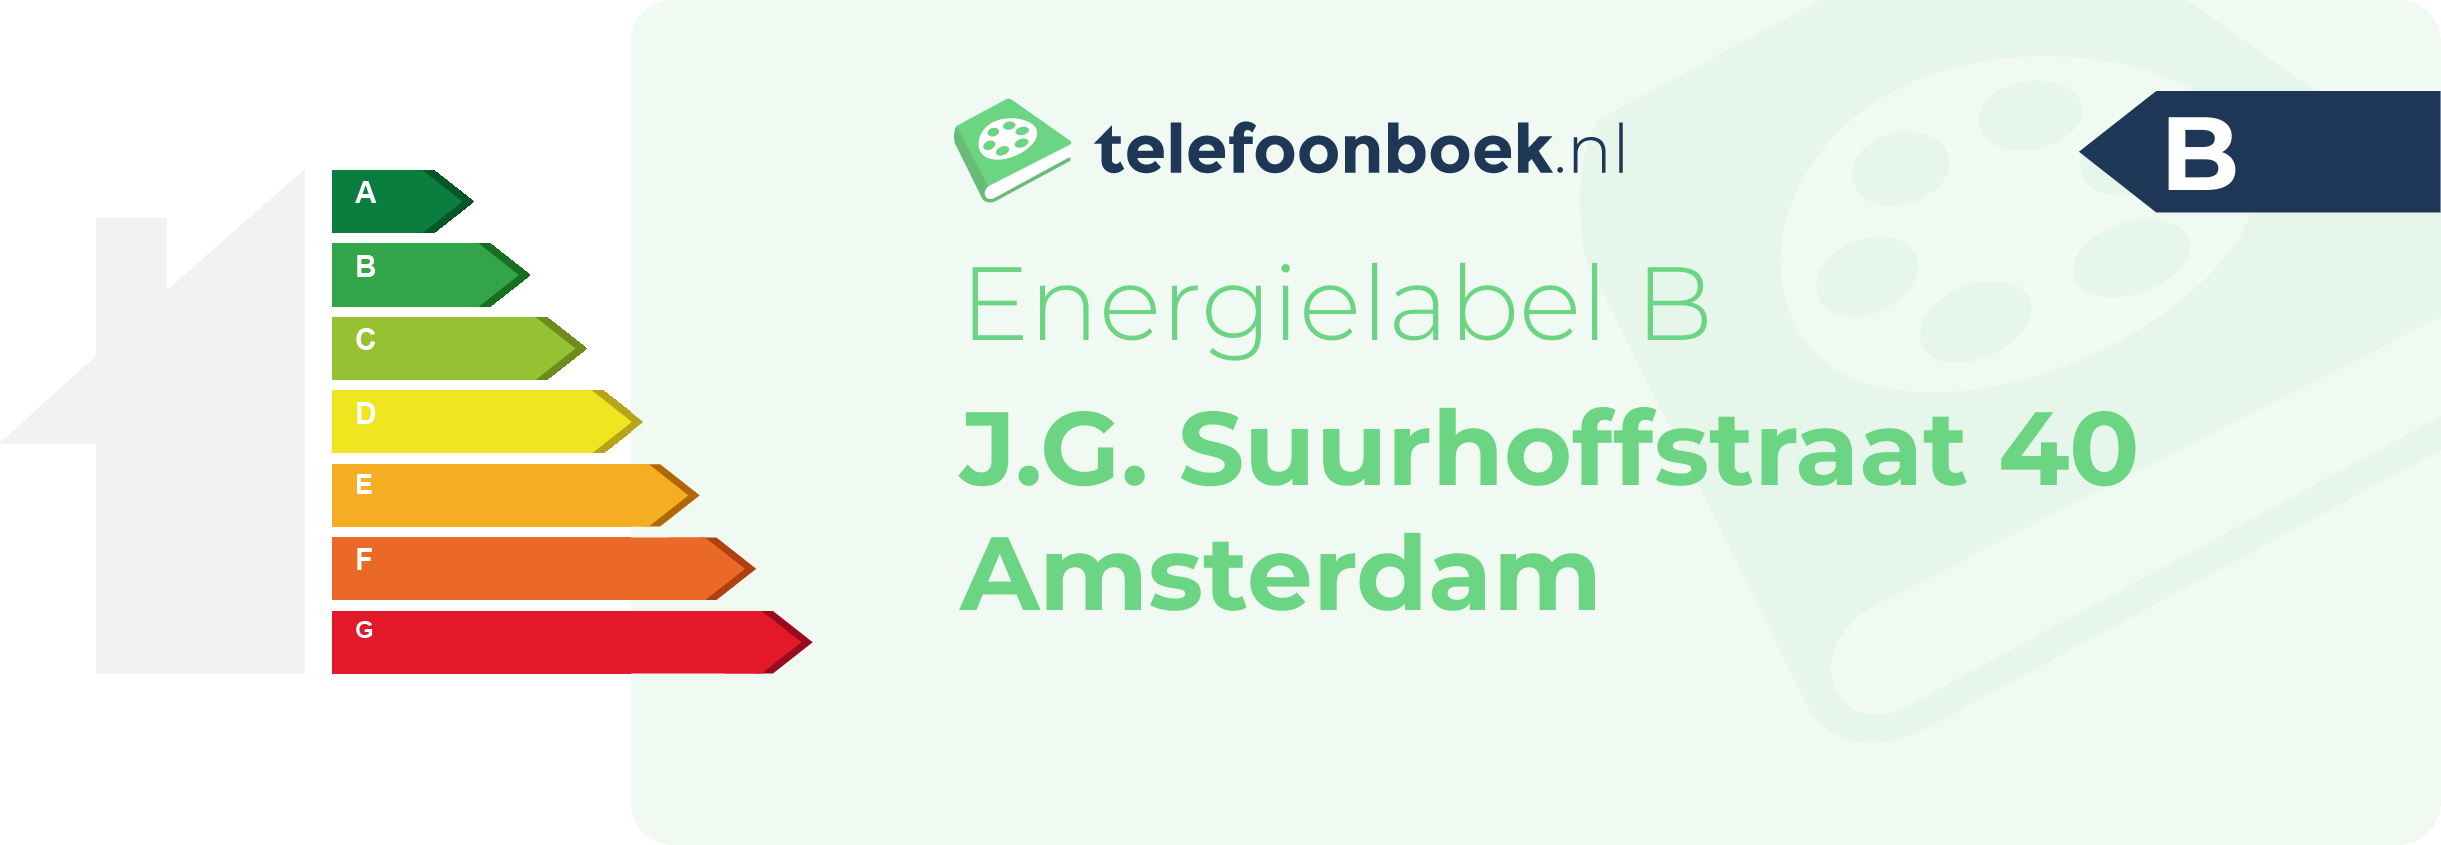 Energielabel J.G. Suurhoffstraat 40 Amsterdam